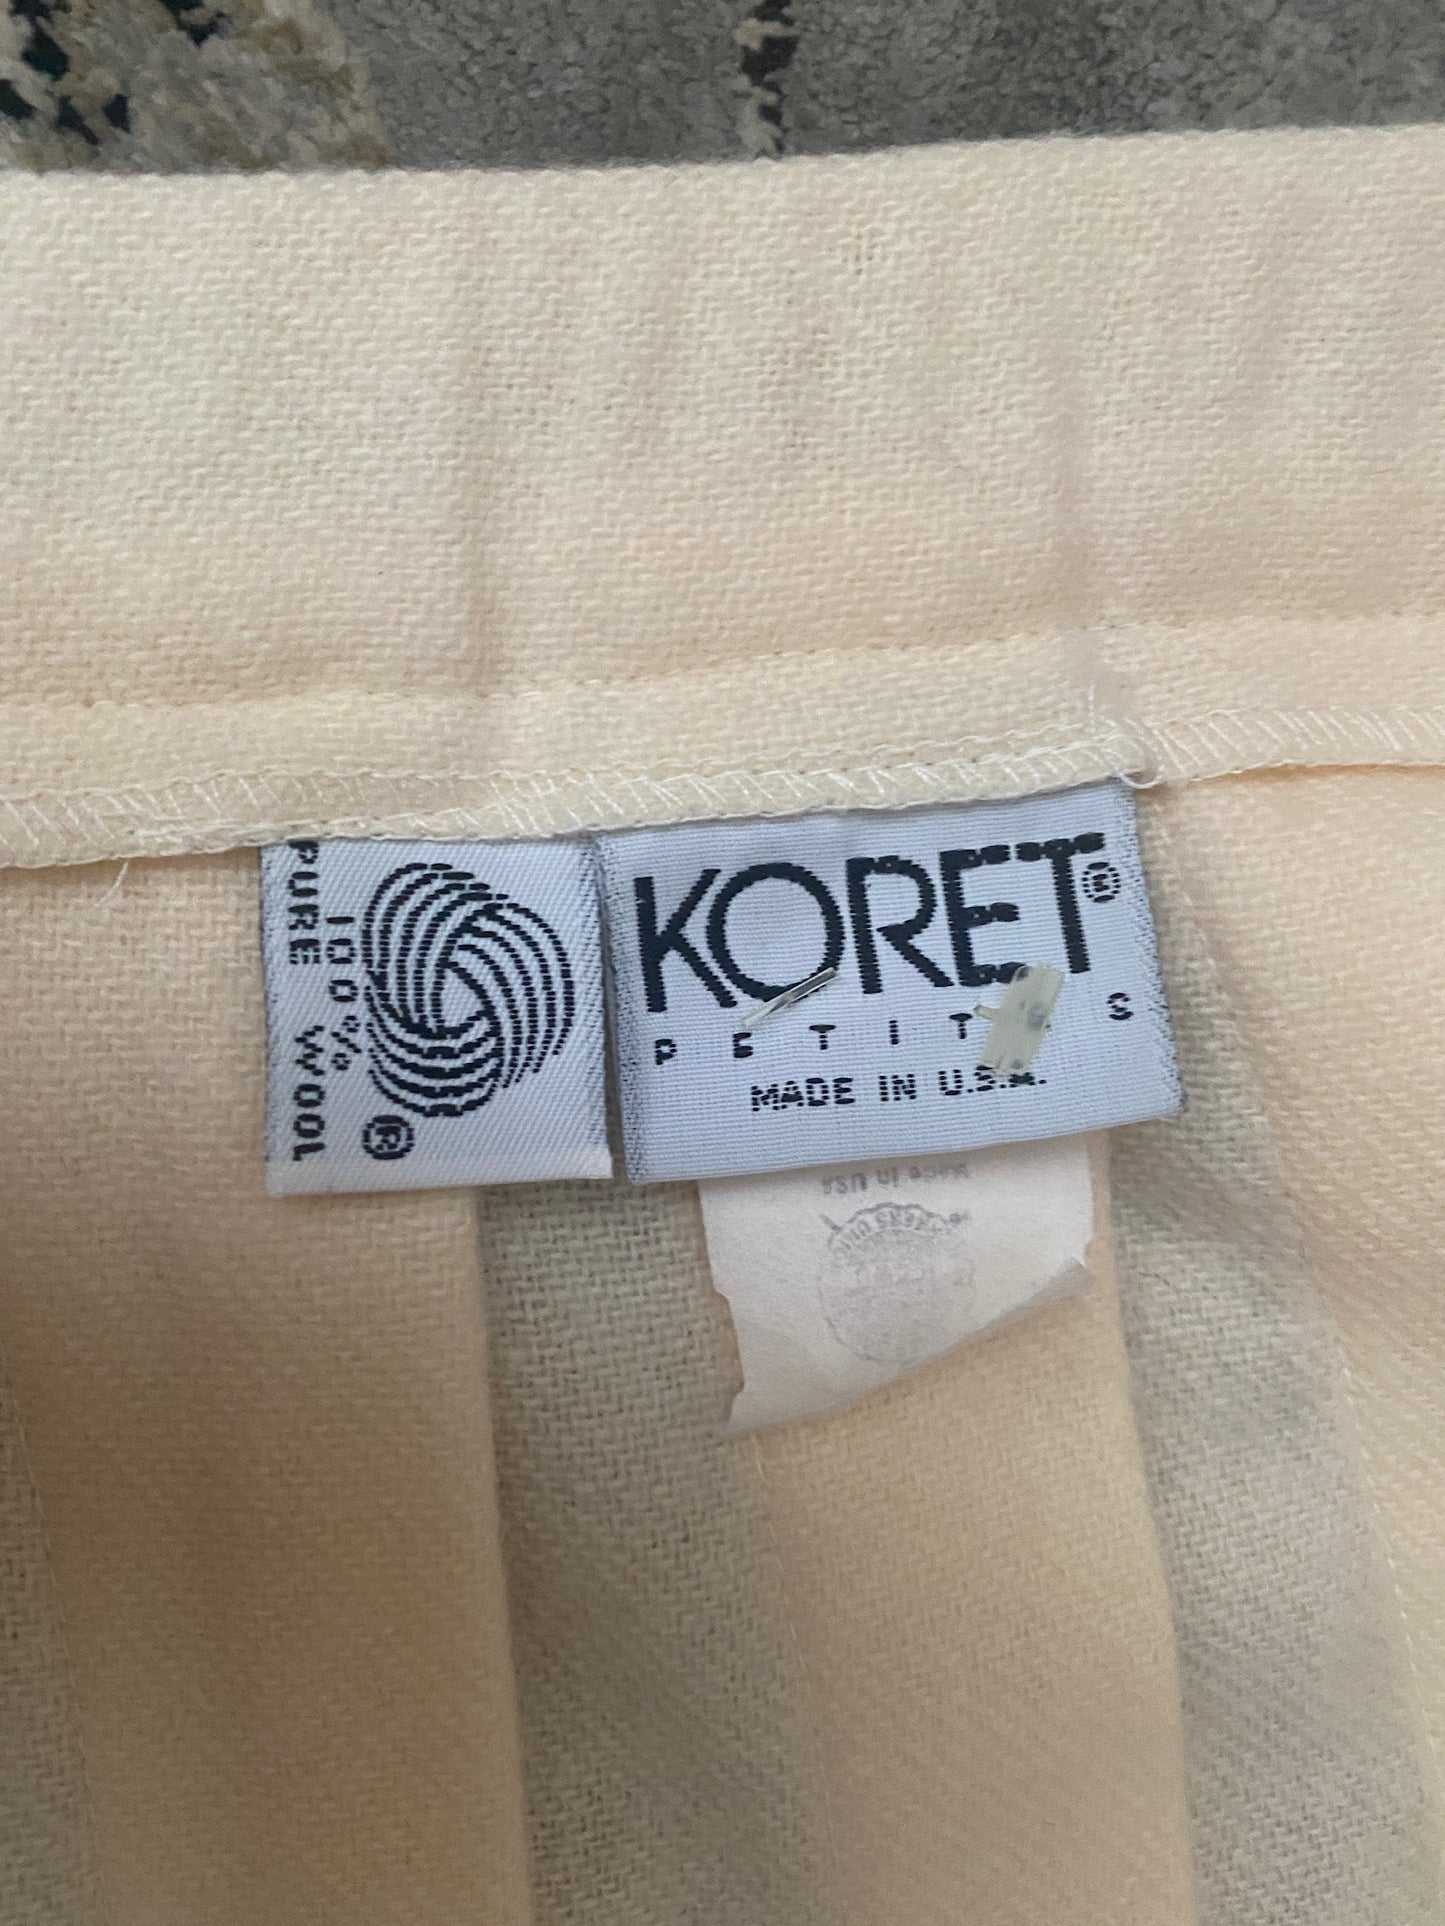 Vintage Koret Petites Pure Wool Ivory Pleated Suit Blazer Set Sz 10